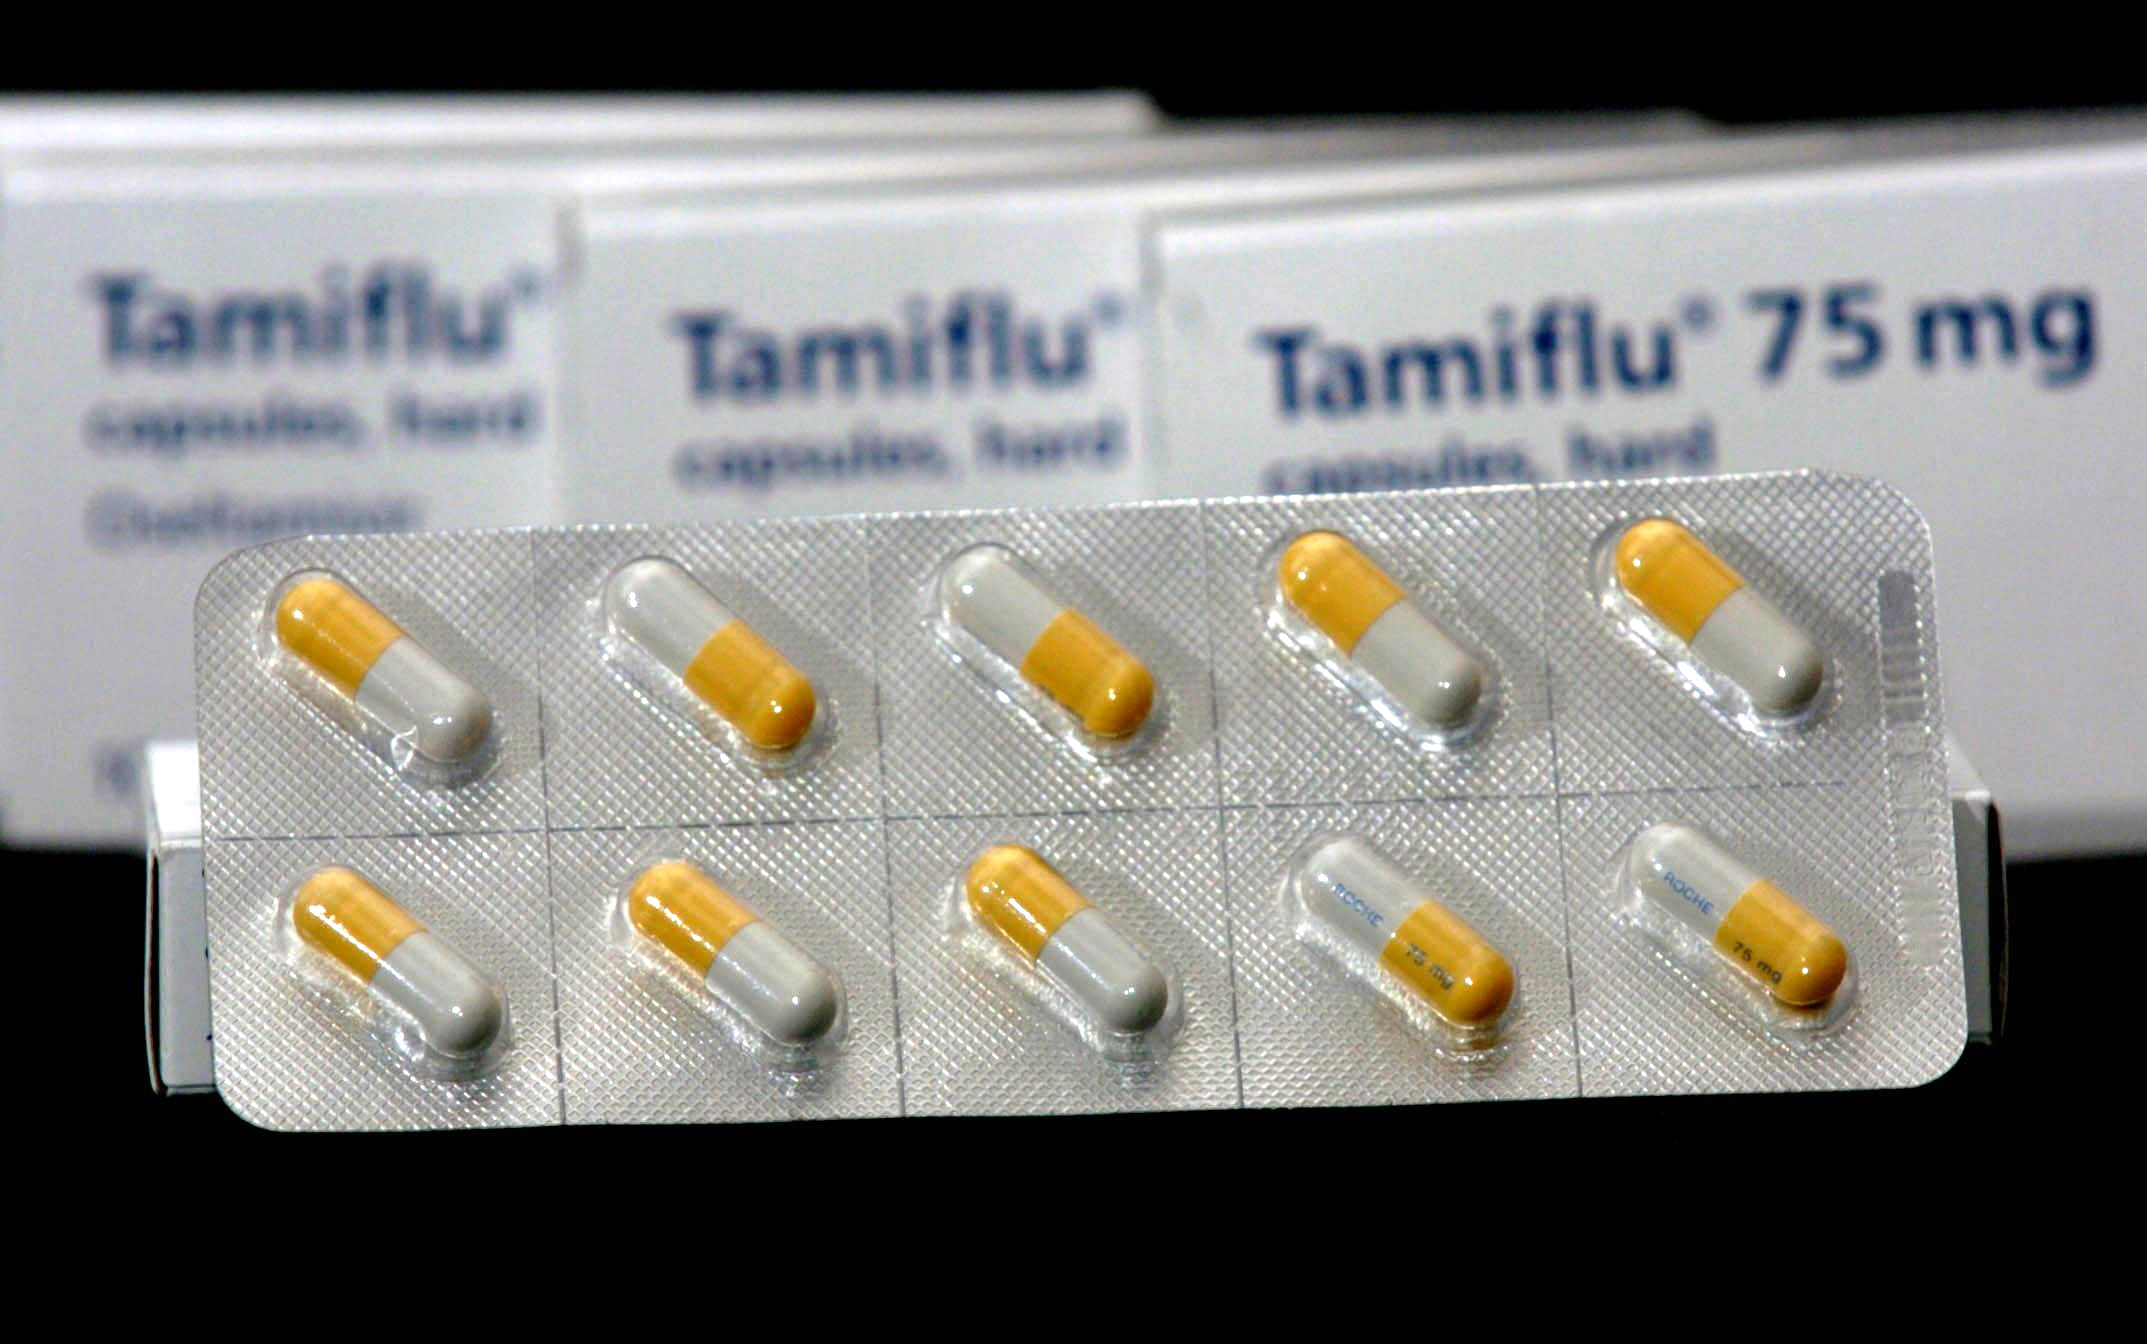 Μελέτη αμφισβητεί την αποτελεσματικότητα της οσελταμιβίρης κατά της γρίπης